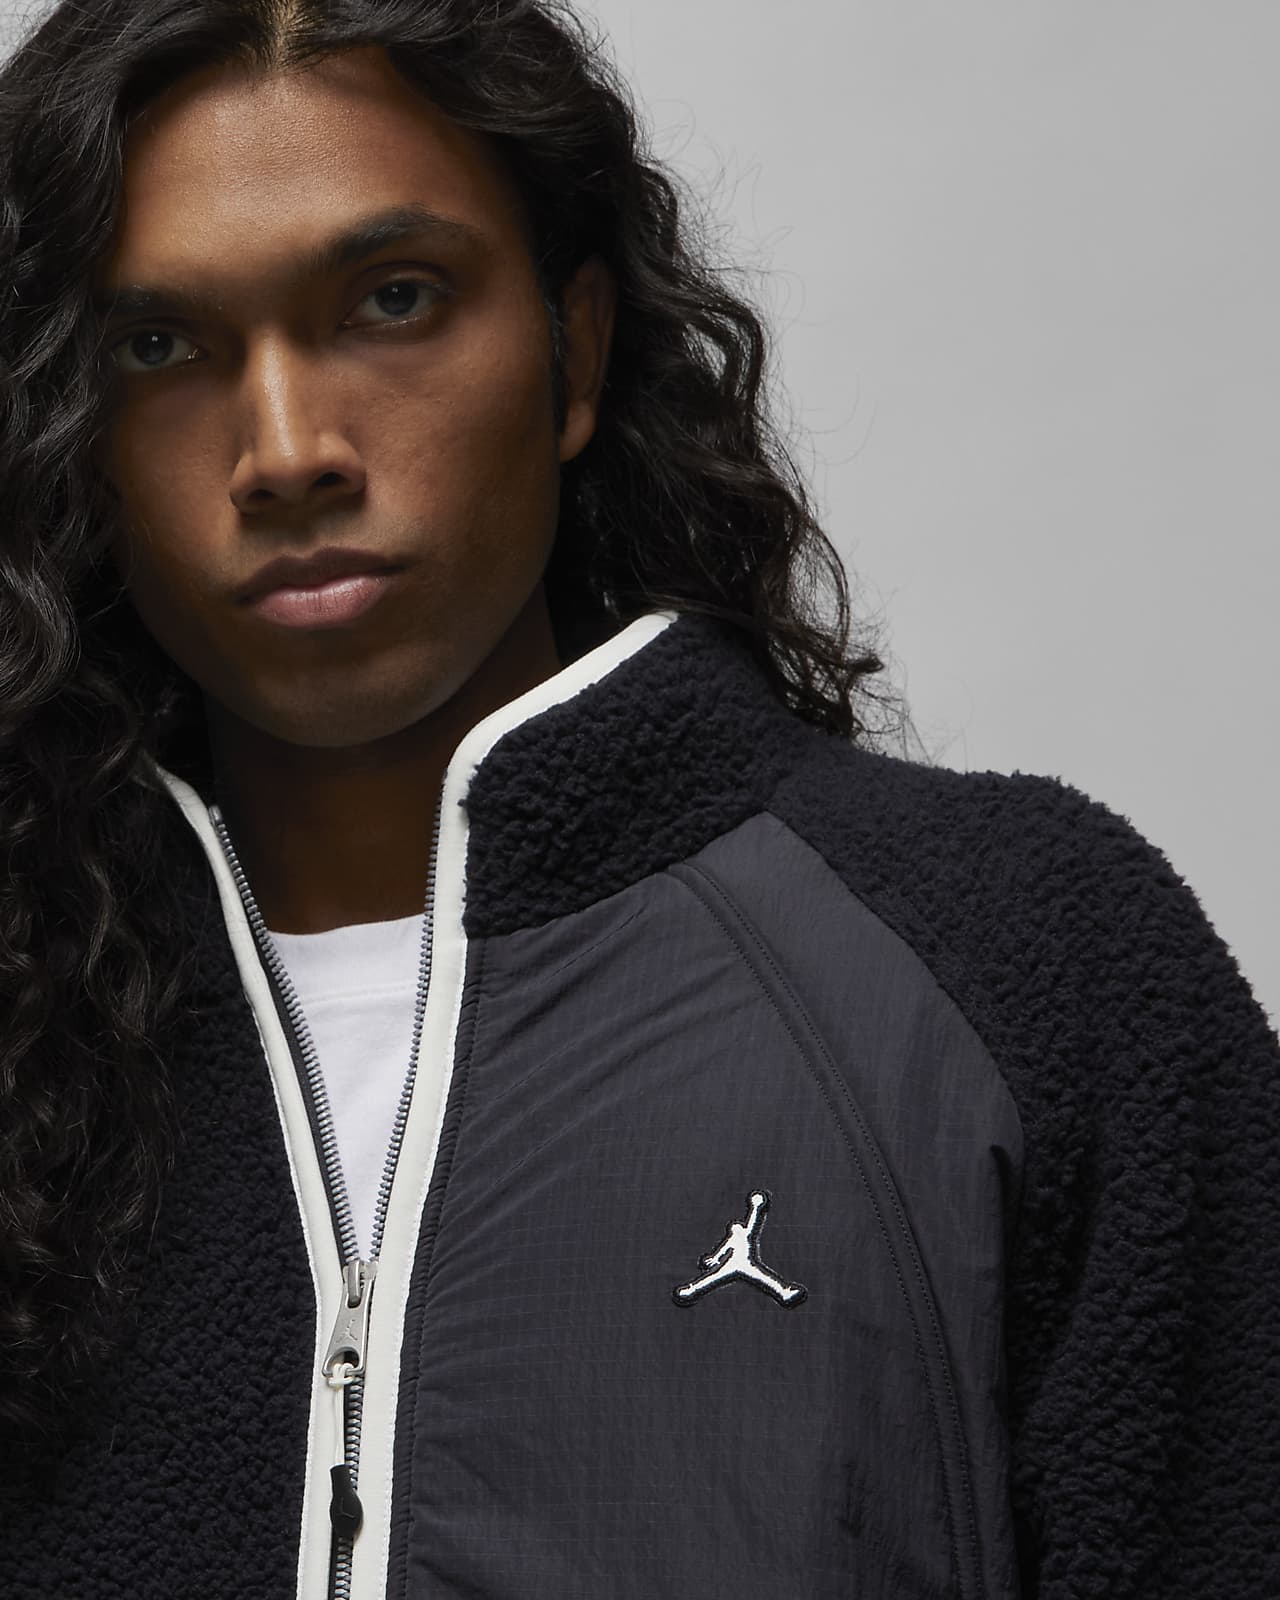 gezagvoerder Prestatie Toneelschrijver Jordan Essentials Men's Full-Zip Winter Fleece. Nike.com